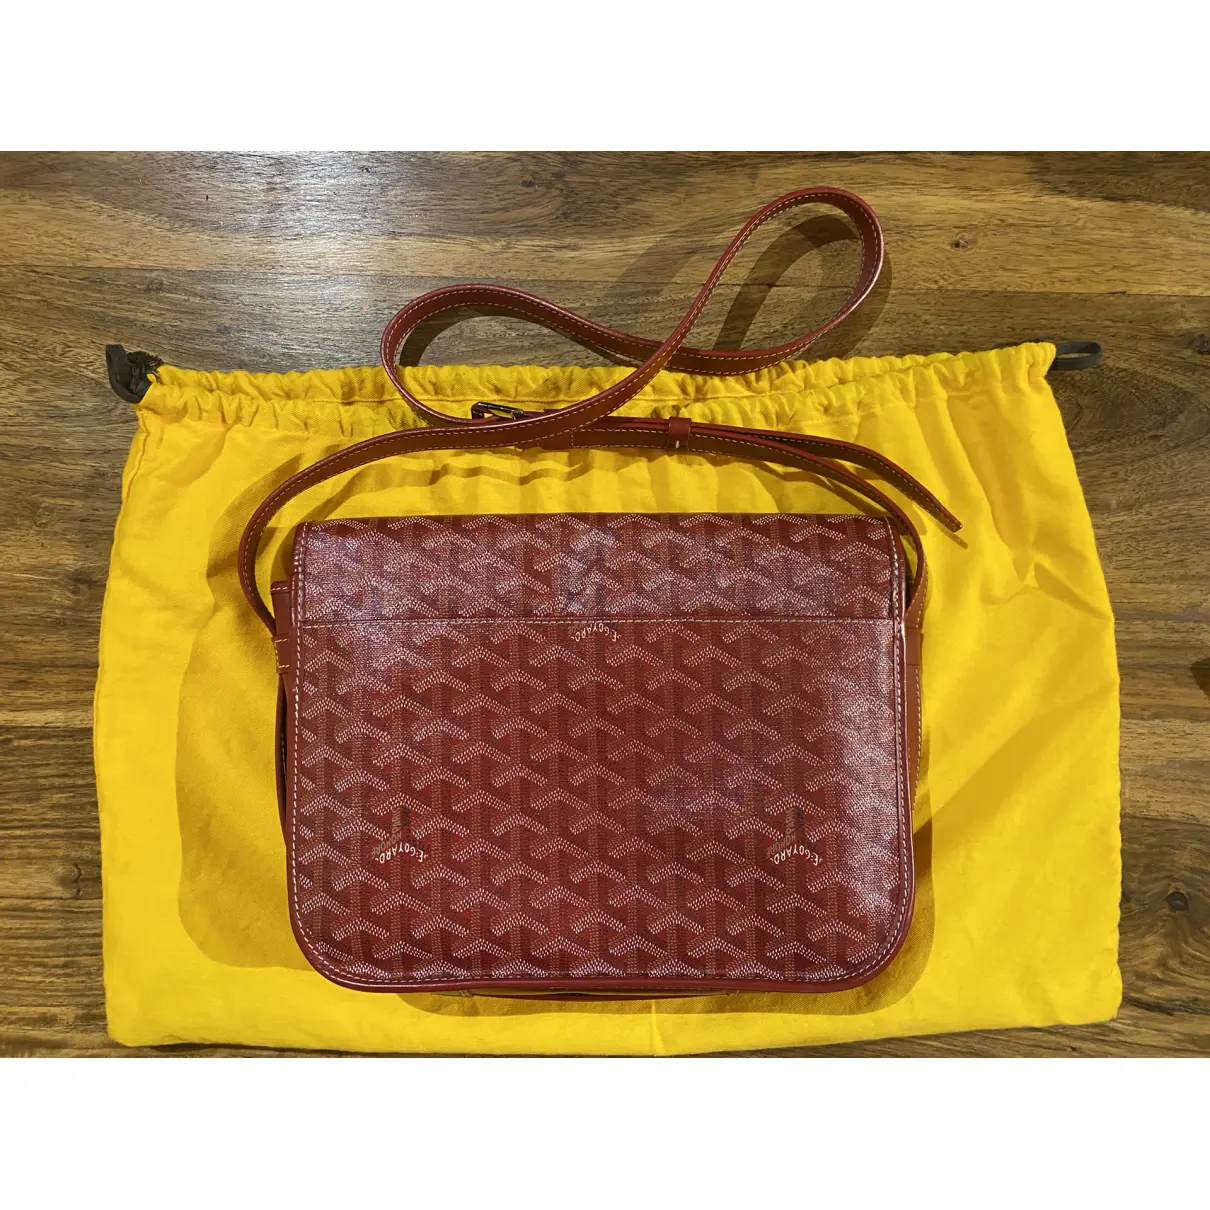 Buy Goyard Belvedère leather bag online